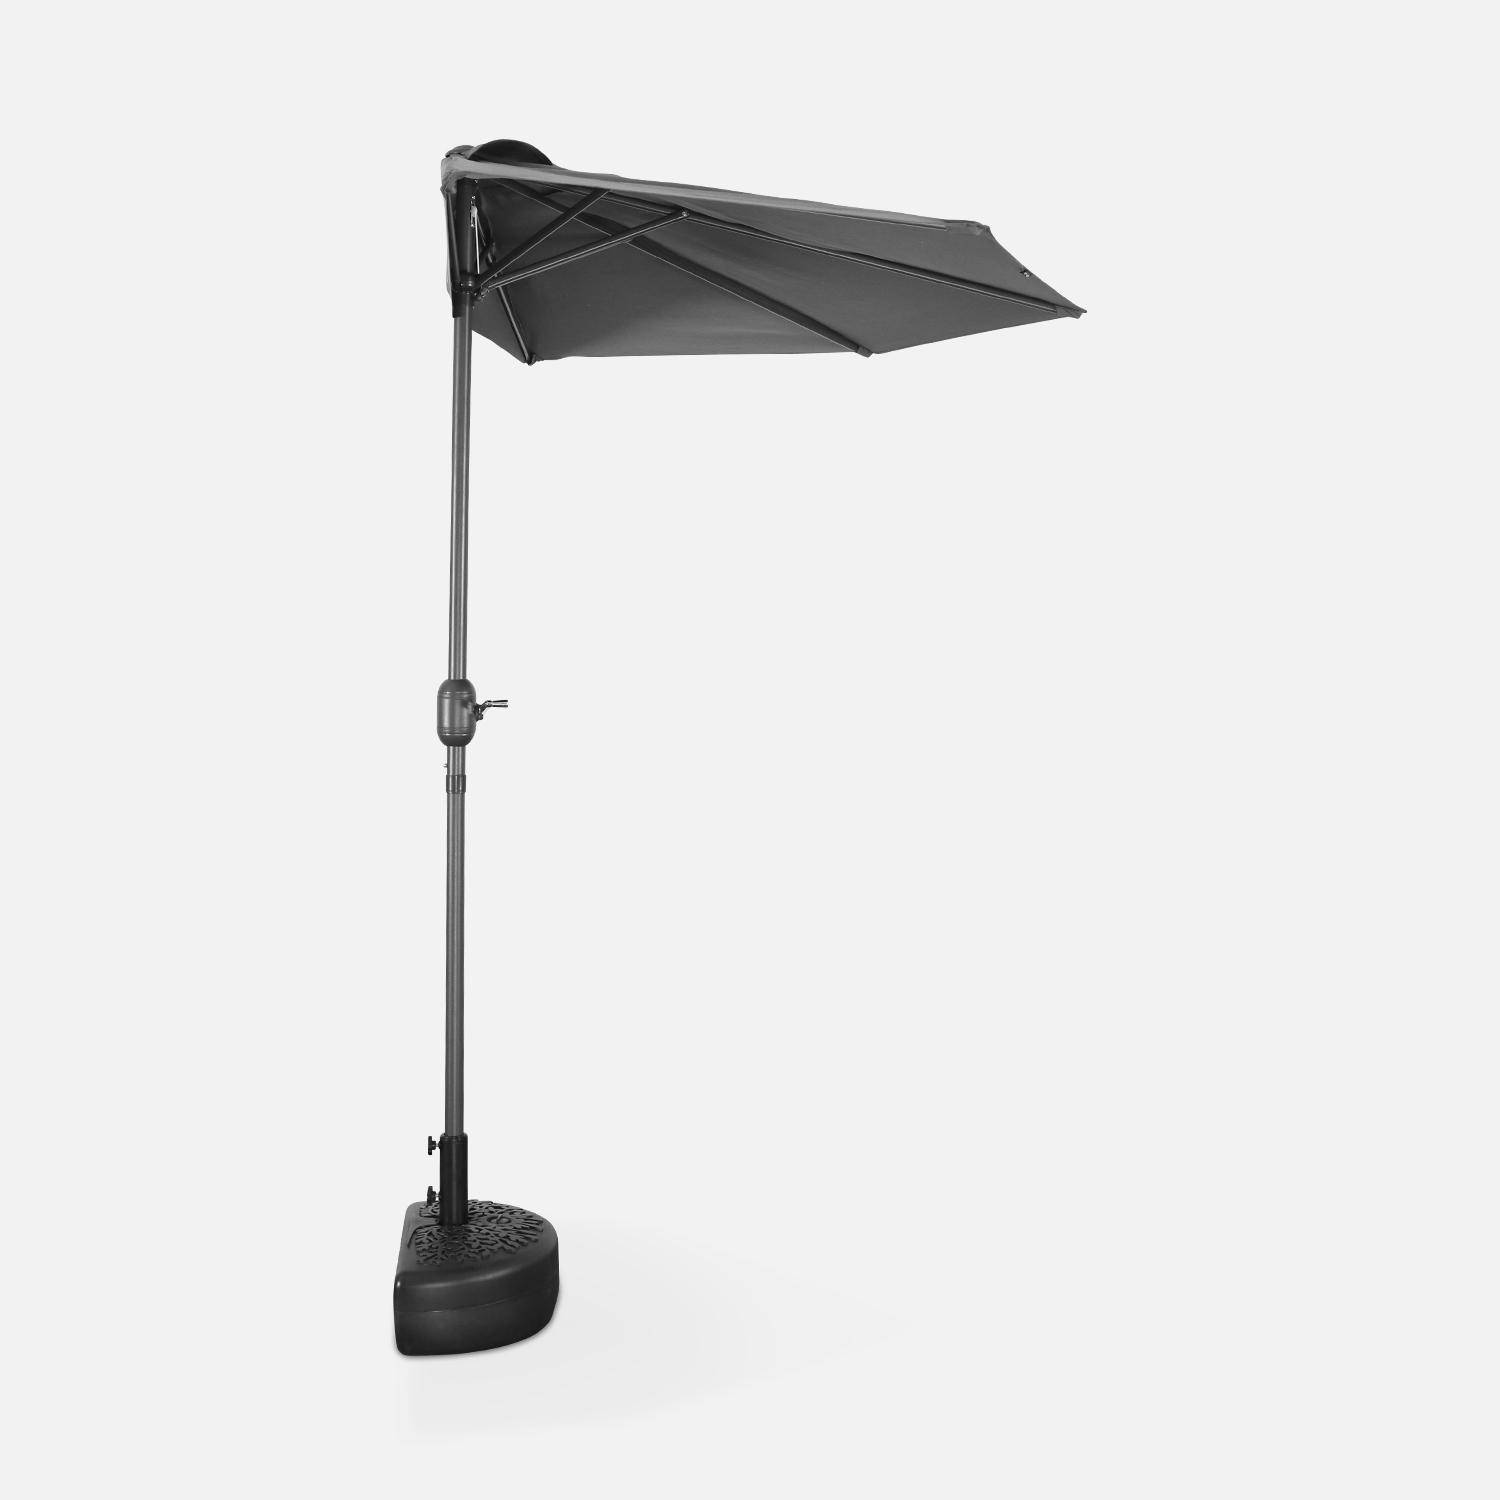  Parasol para balcón Ø250cm - CALVI - Medio parasol recto, mástil de aluminio con manivela, tejido gris,sweeek,Photo4